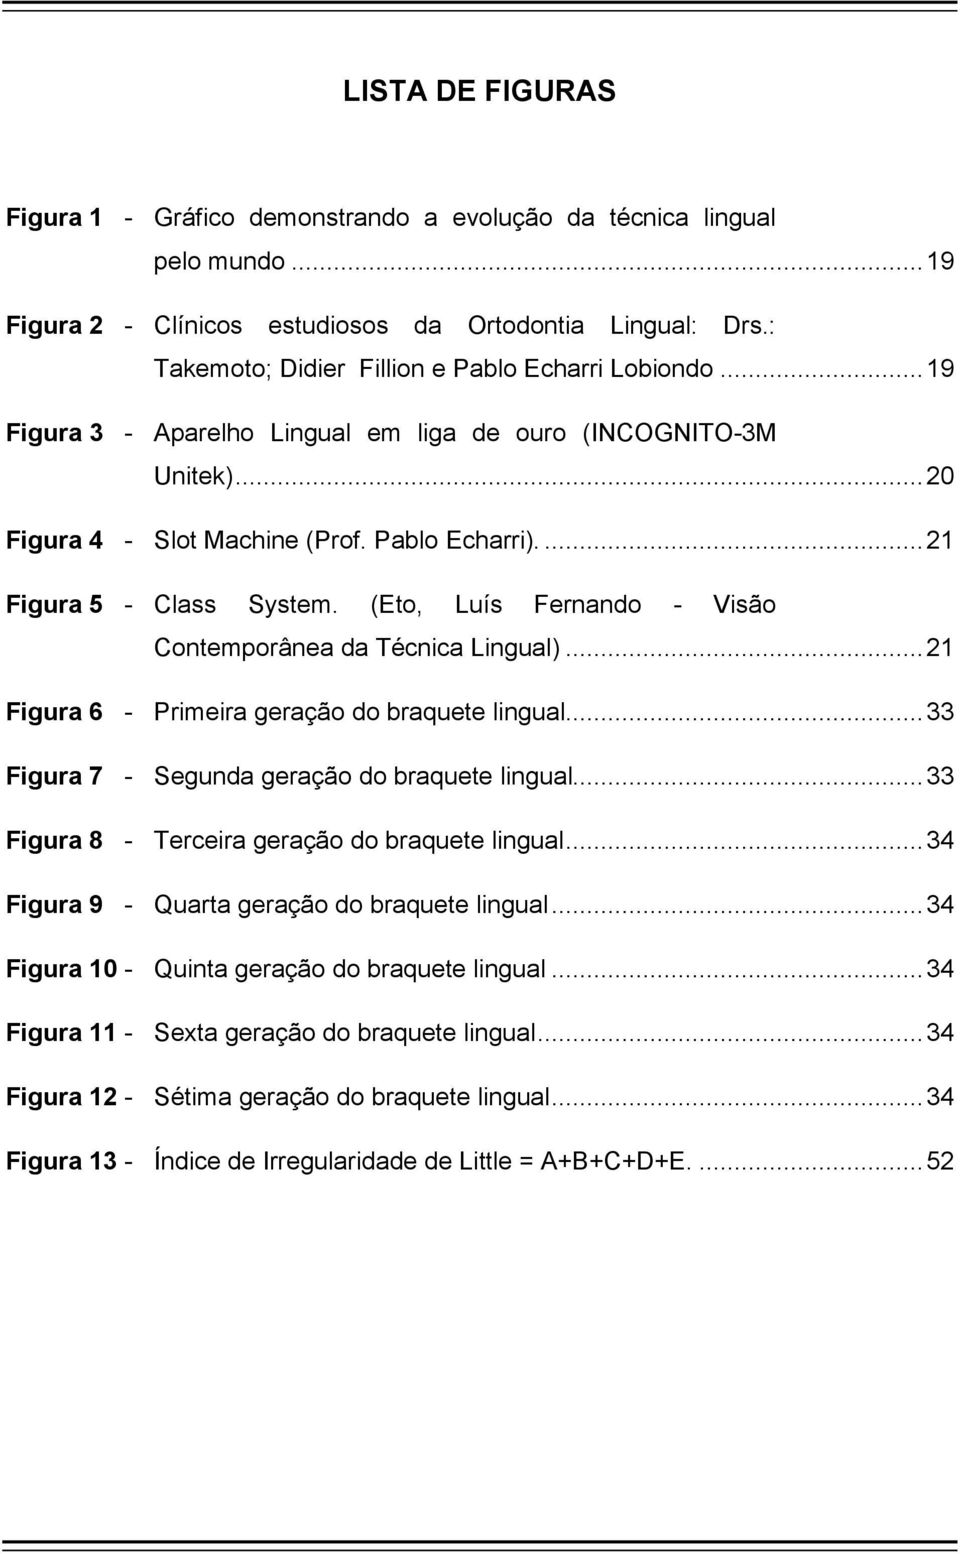 ... 21 Figura 5 - Class System. (Eto, Luís Fernando - Visão Contemporânea da Técnica Lingual)... 21 Figura 6 - Primeira geração do braquete lingual... 33 Figura 7 - Segunda geração do braquete lingual.